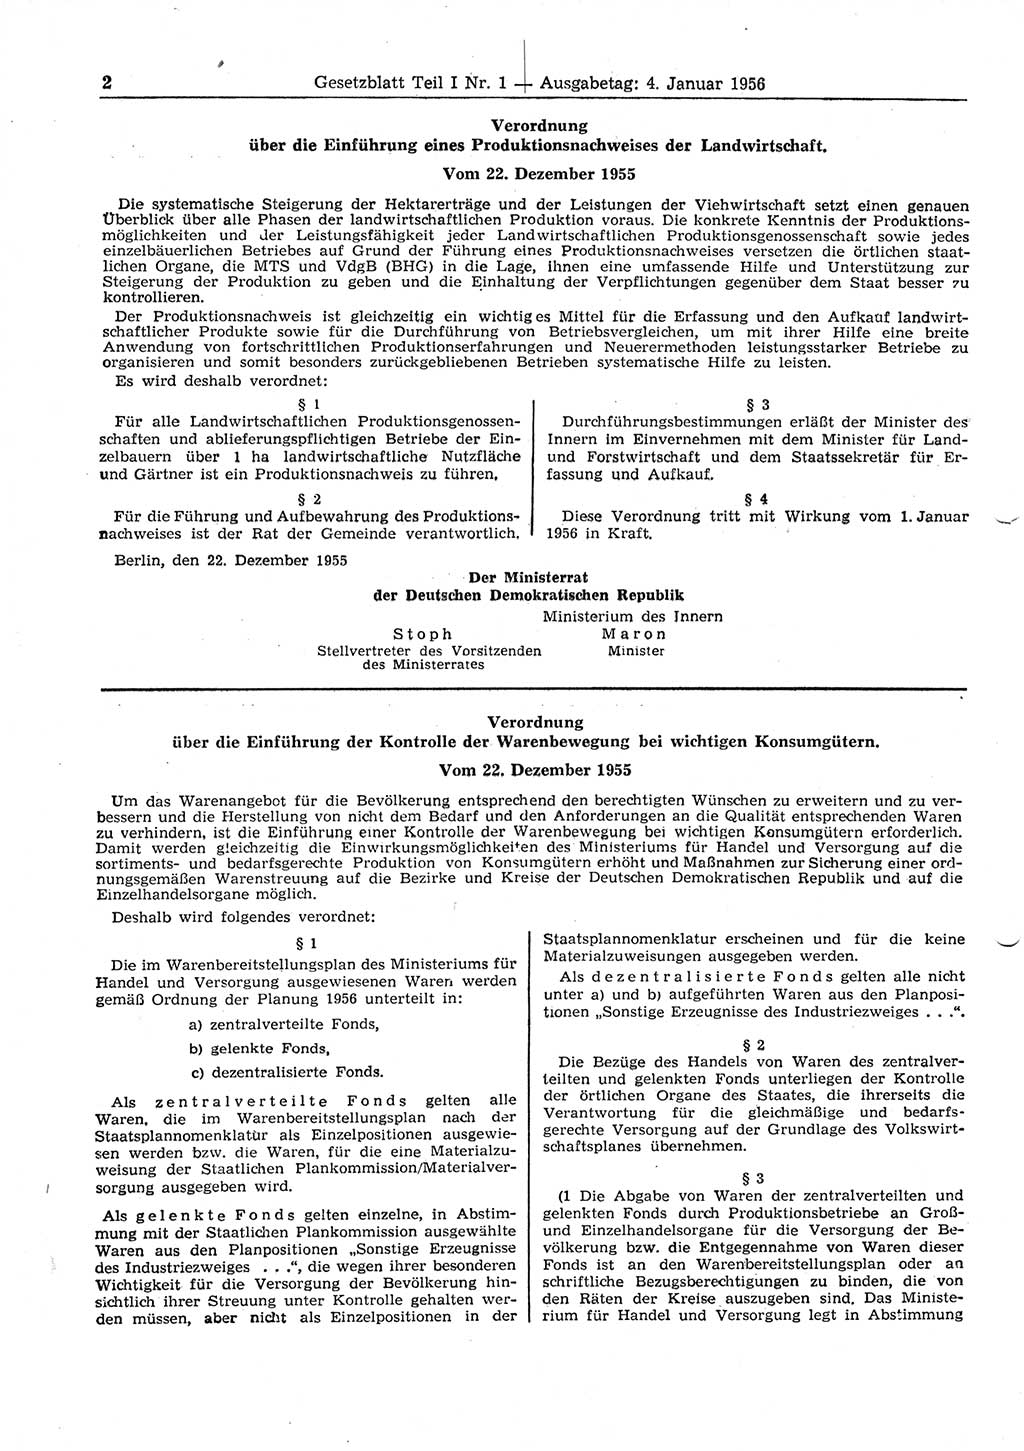 Gesetzblatt (GBl.) der Deutschen Demokratischen Republik (DDR) Teil Ⅰ 1956, Seite 2 (GBl. DDR Ⅰ 1956, S. 2)